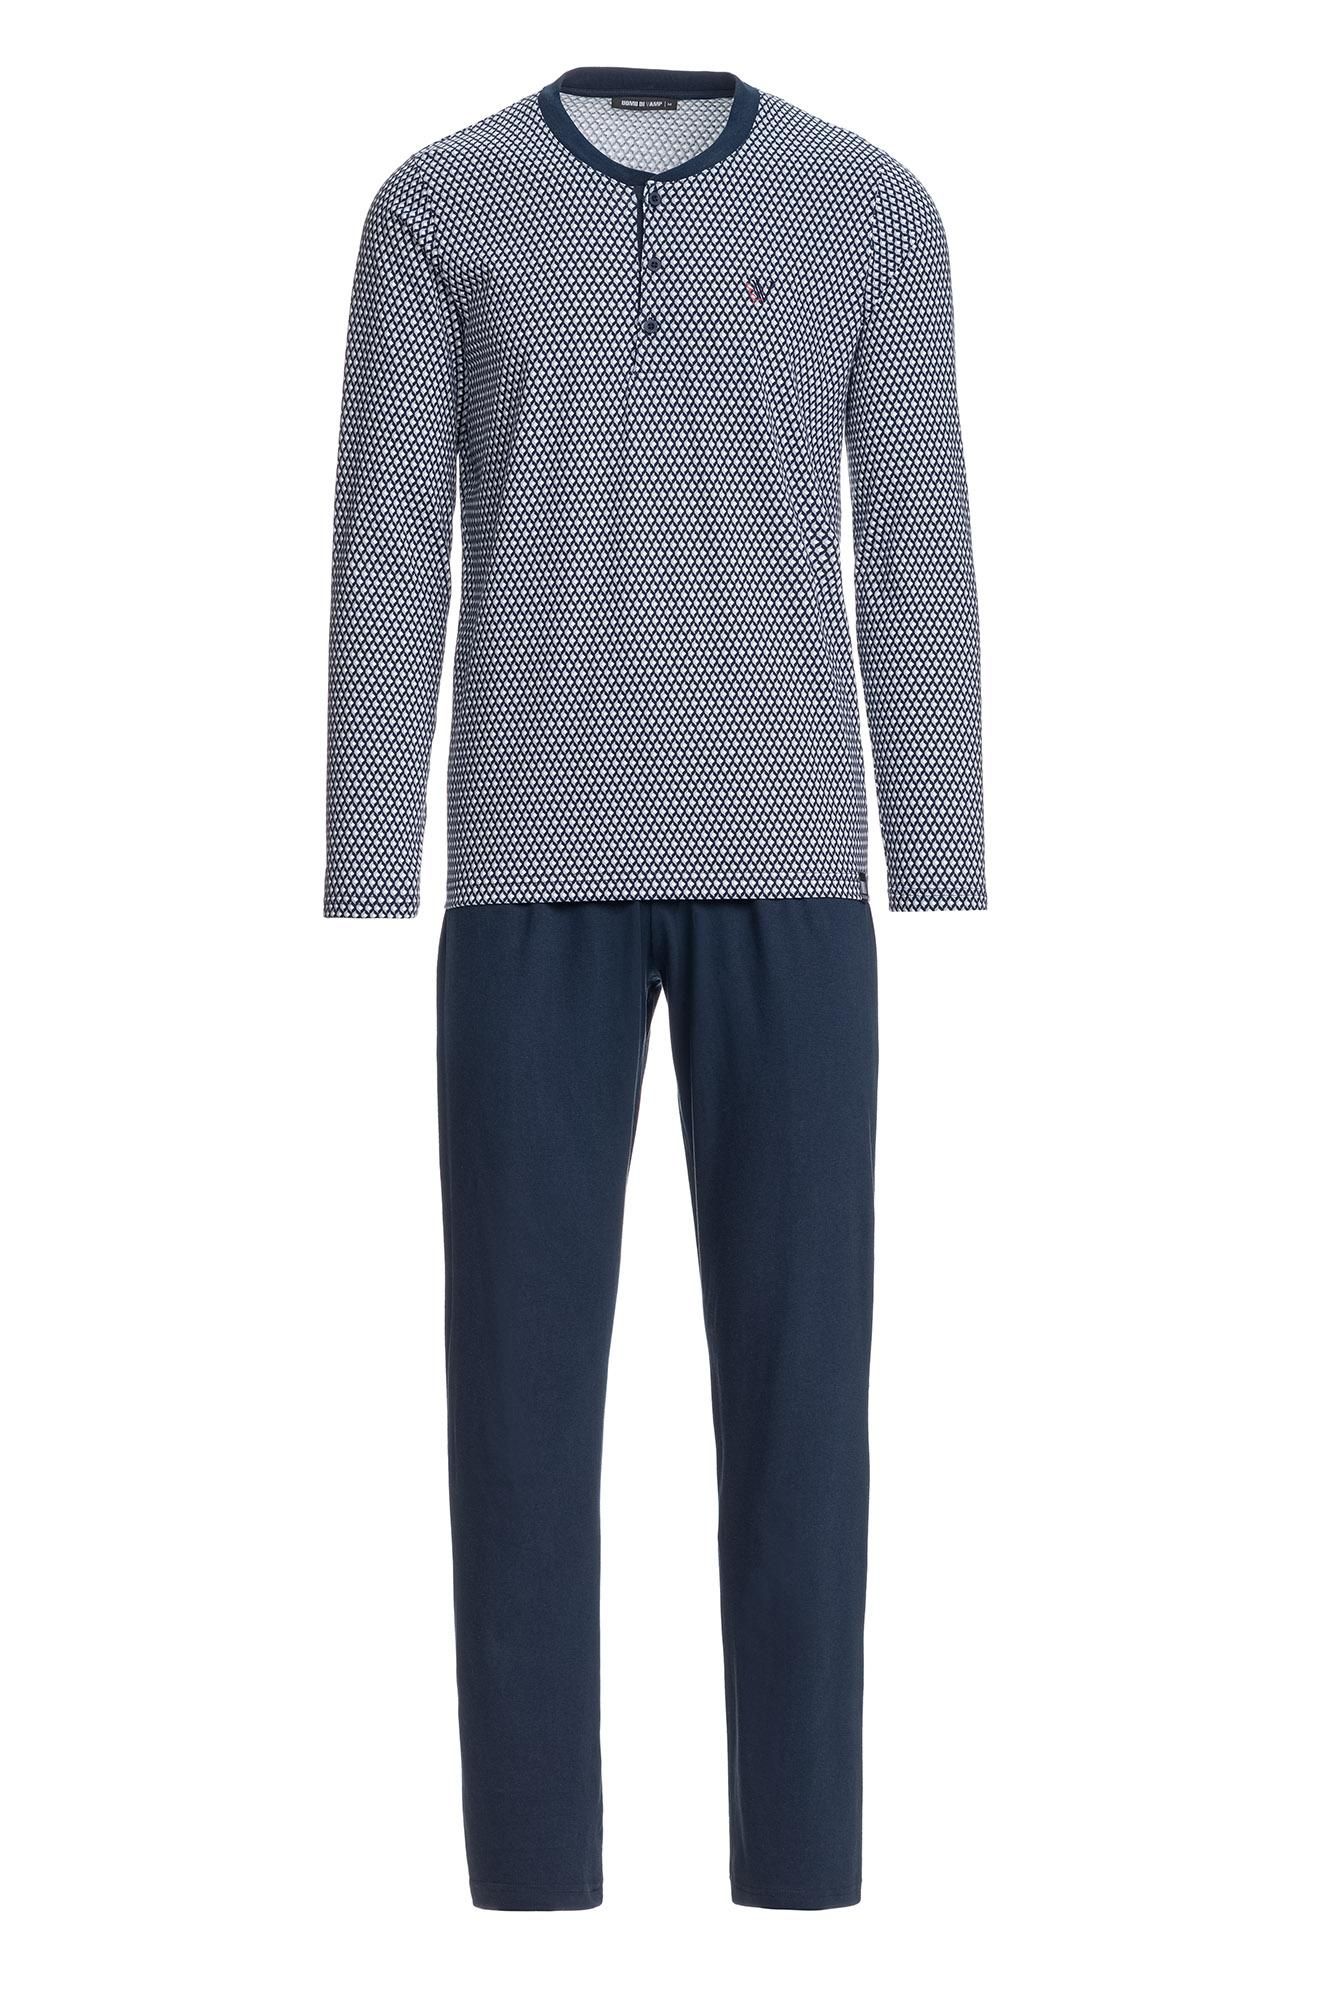 Men’s Patterned Pyjamas with Button Placket Plus Size